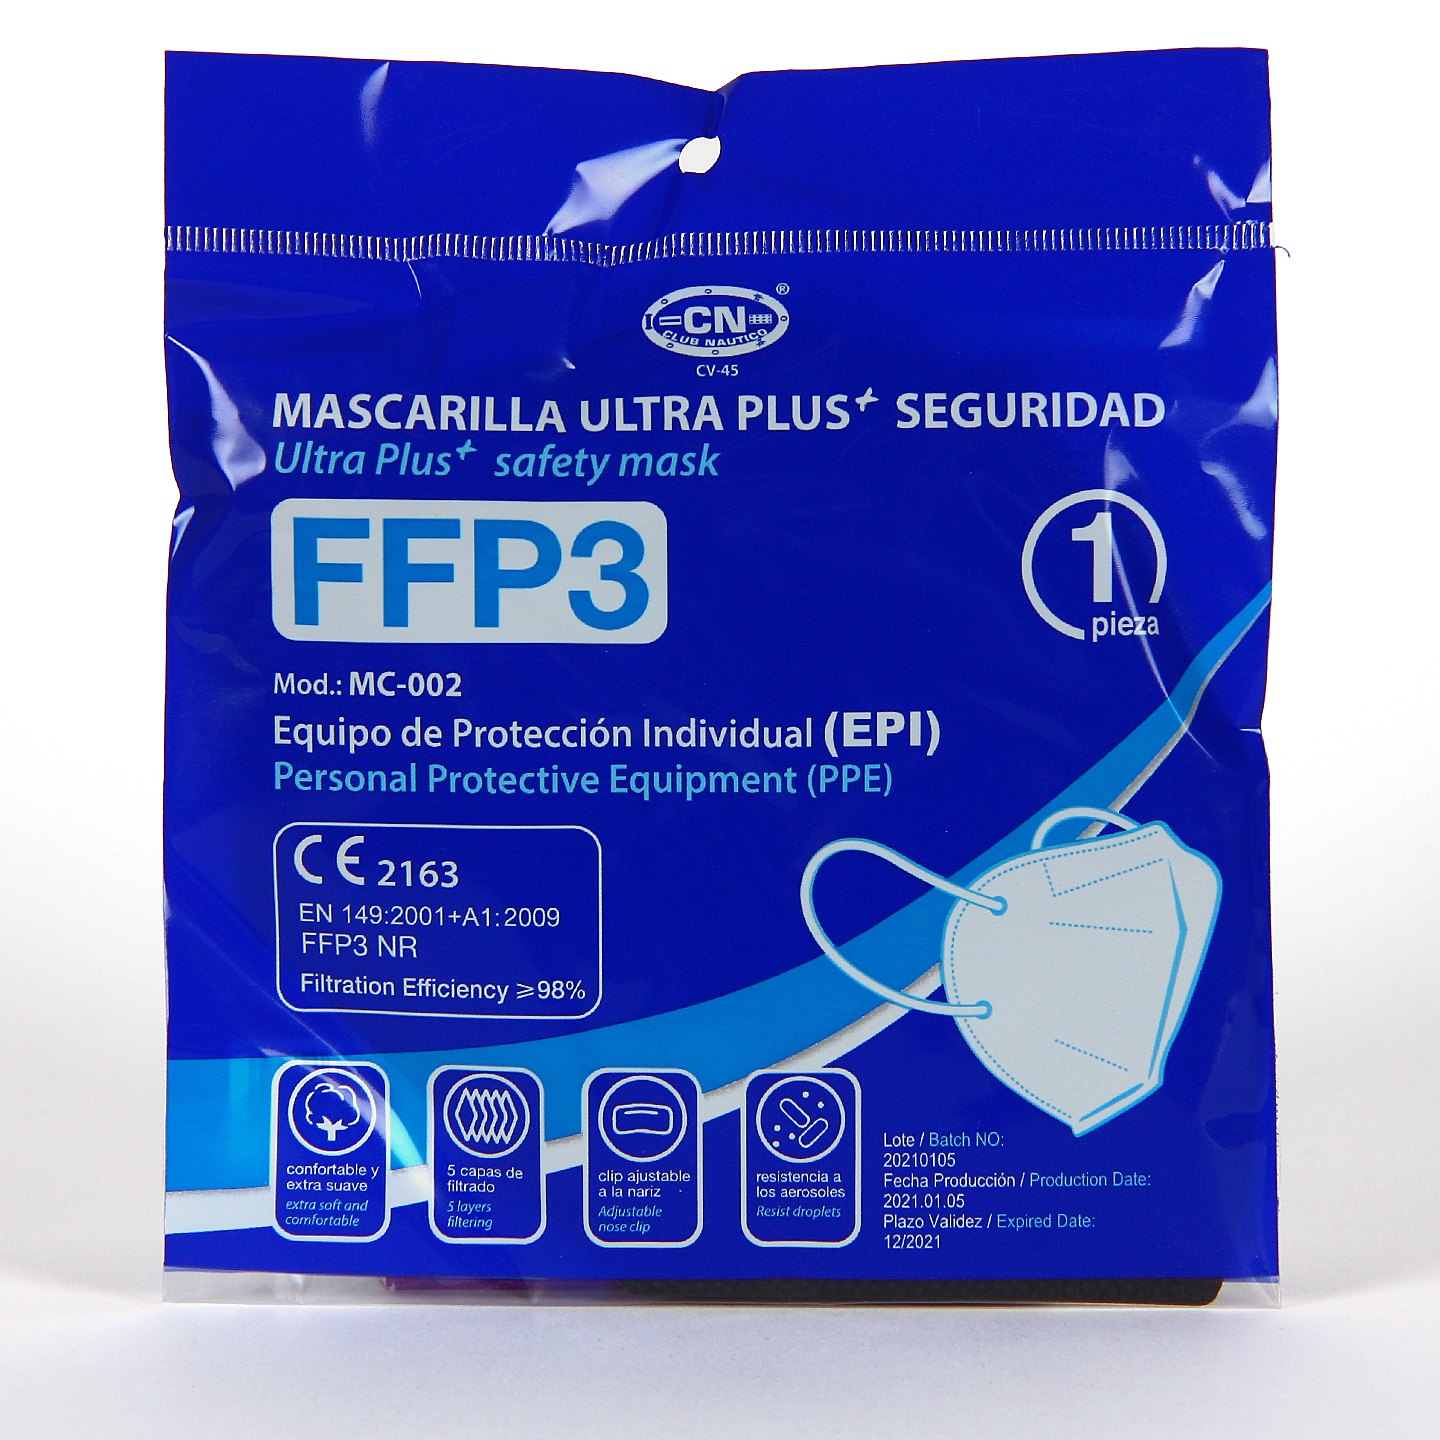 Mascarilla FFP3 1 unidad color negro, Certificado CE